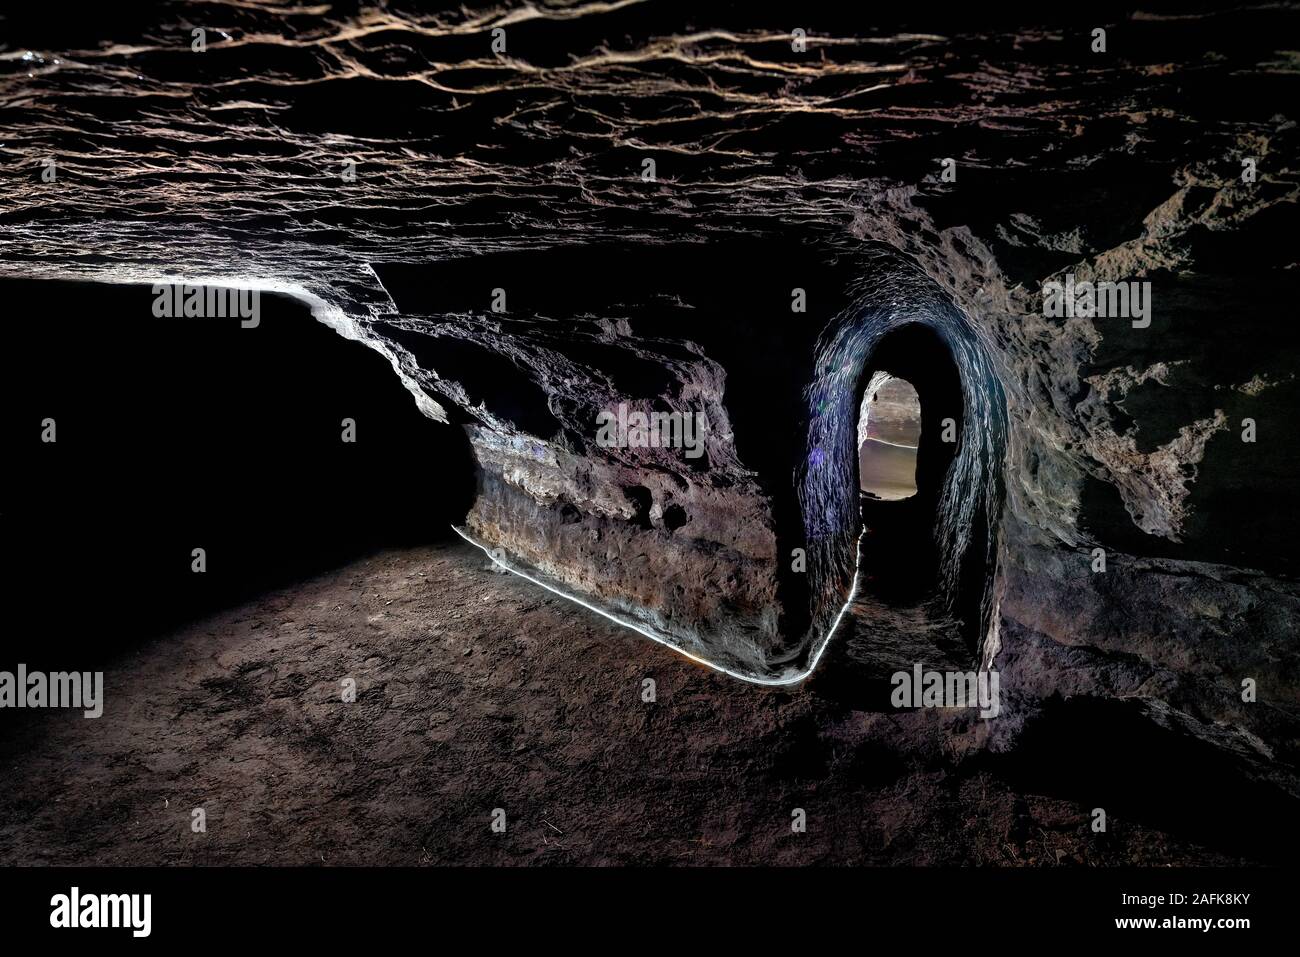 Cuevas de Hella, Islandia. Cavernas hechas por el hombre, podrían ser realizadas por los Celtas que habitaban Islandia ante el diario colonia escandinava, a finales del siglo IX. Foto de stock